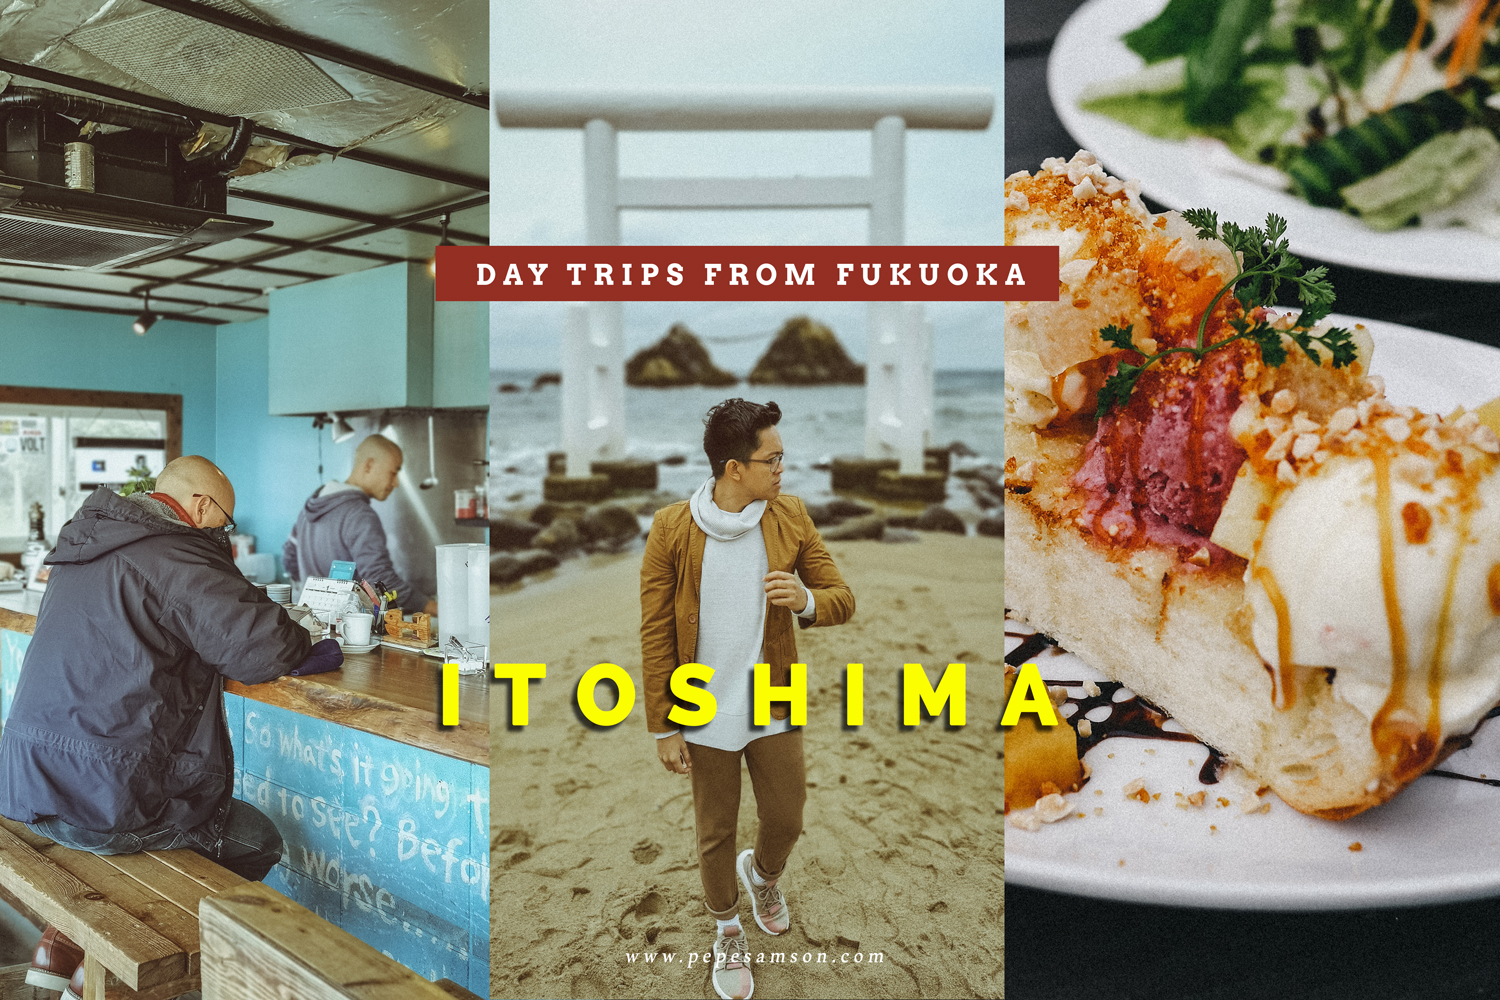 Travel Guide: Itoshima Day Trip from Fukuoka